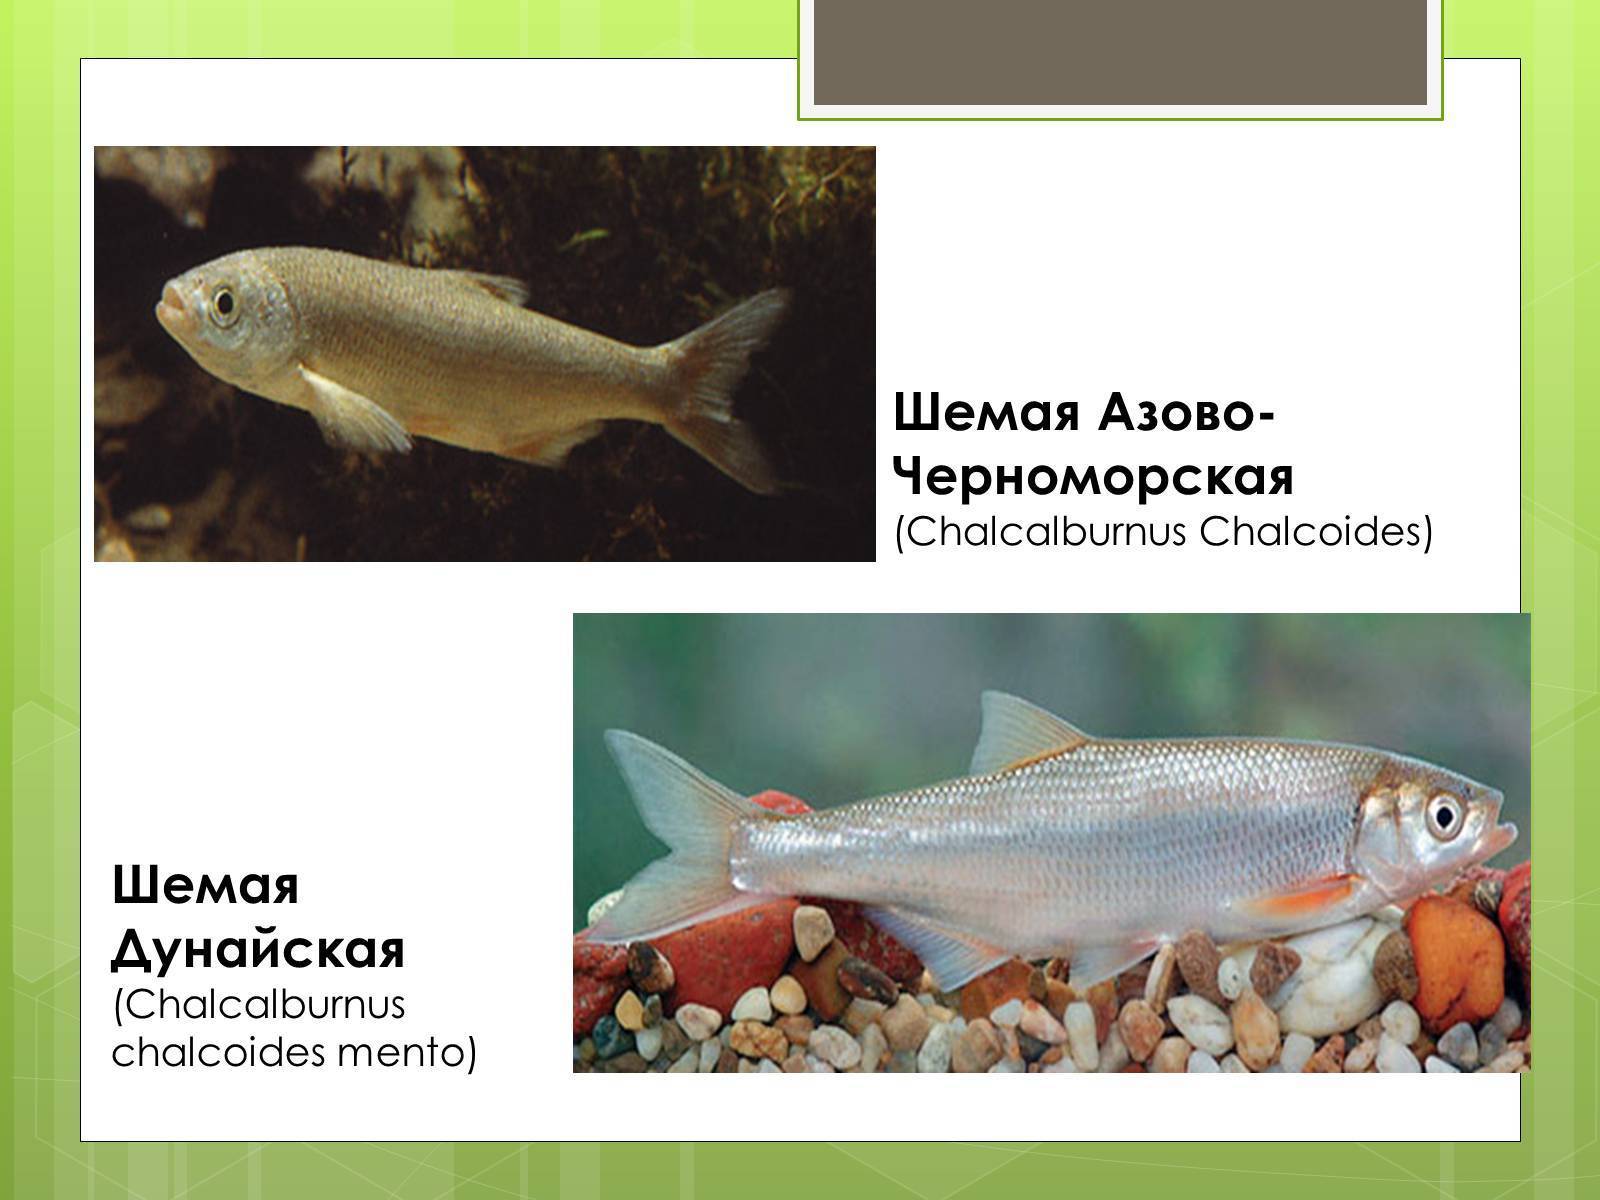 Рыба «Шемая азово-черноморская» фото и описание